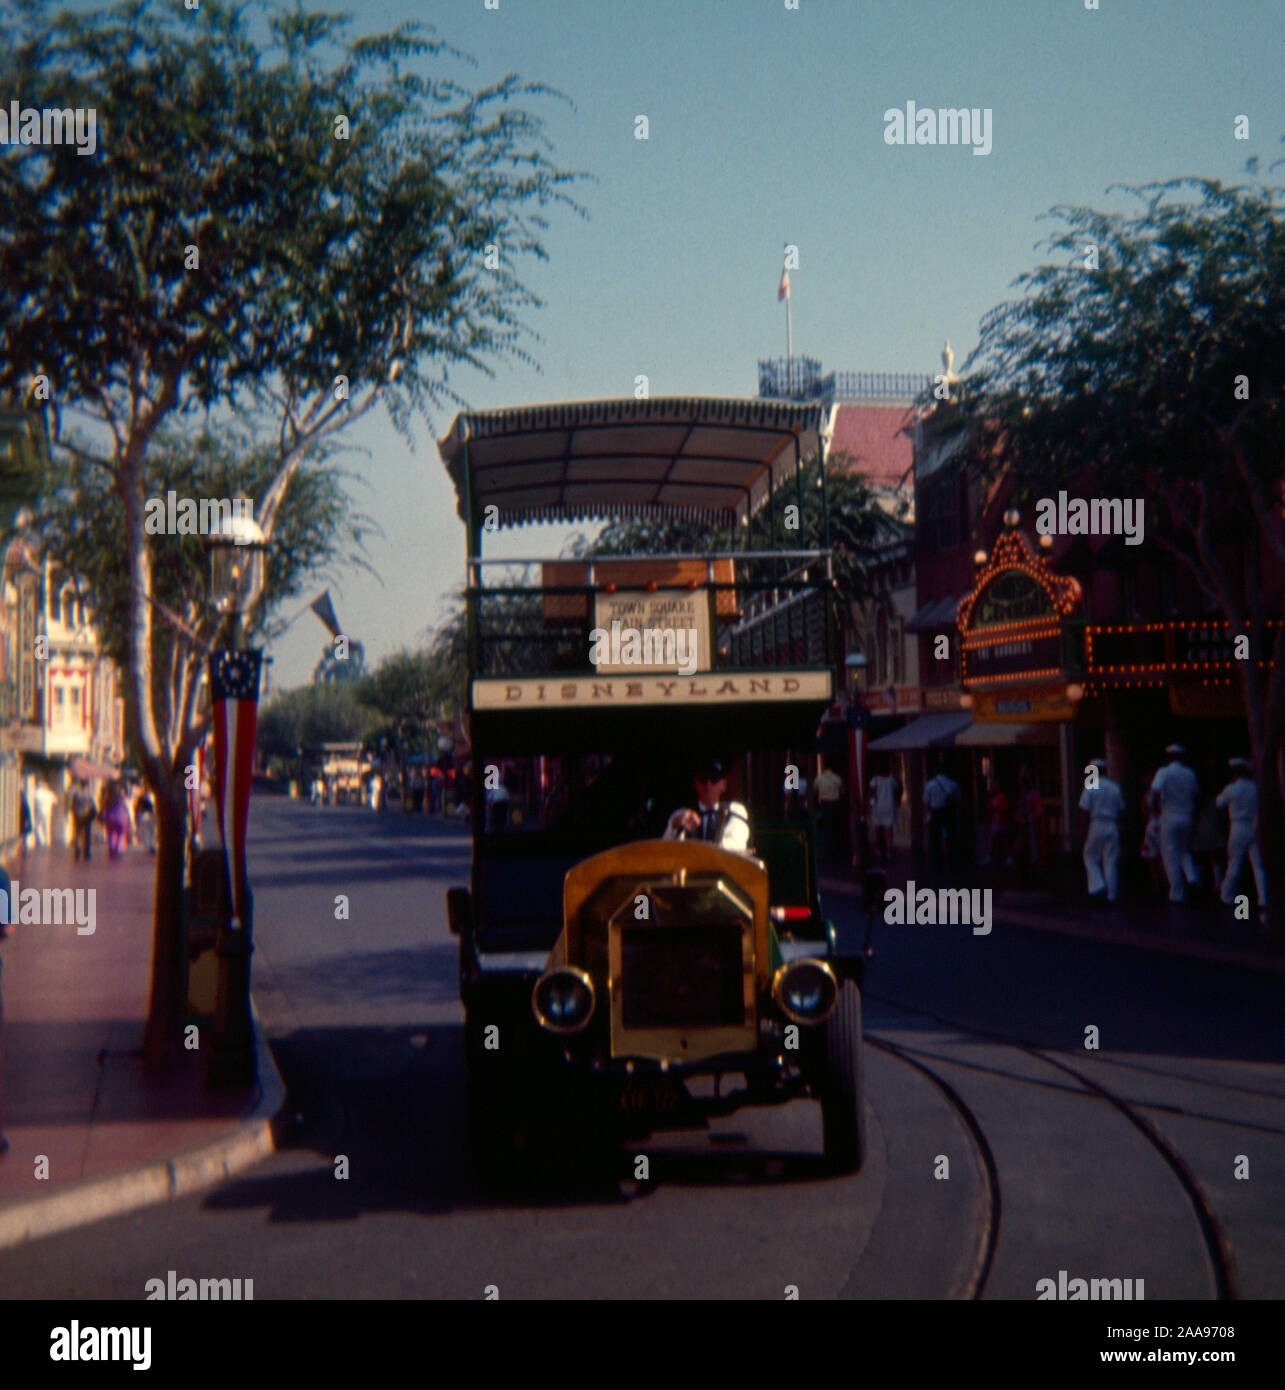 Jahrgang September 1972 Foto, Disney Transport Co Bus auf der Main Street des Disneyland Park in Anaheim, Kalifornien. Quelle: Original 35 mm Transparenz Stockfoto